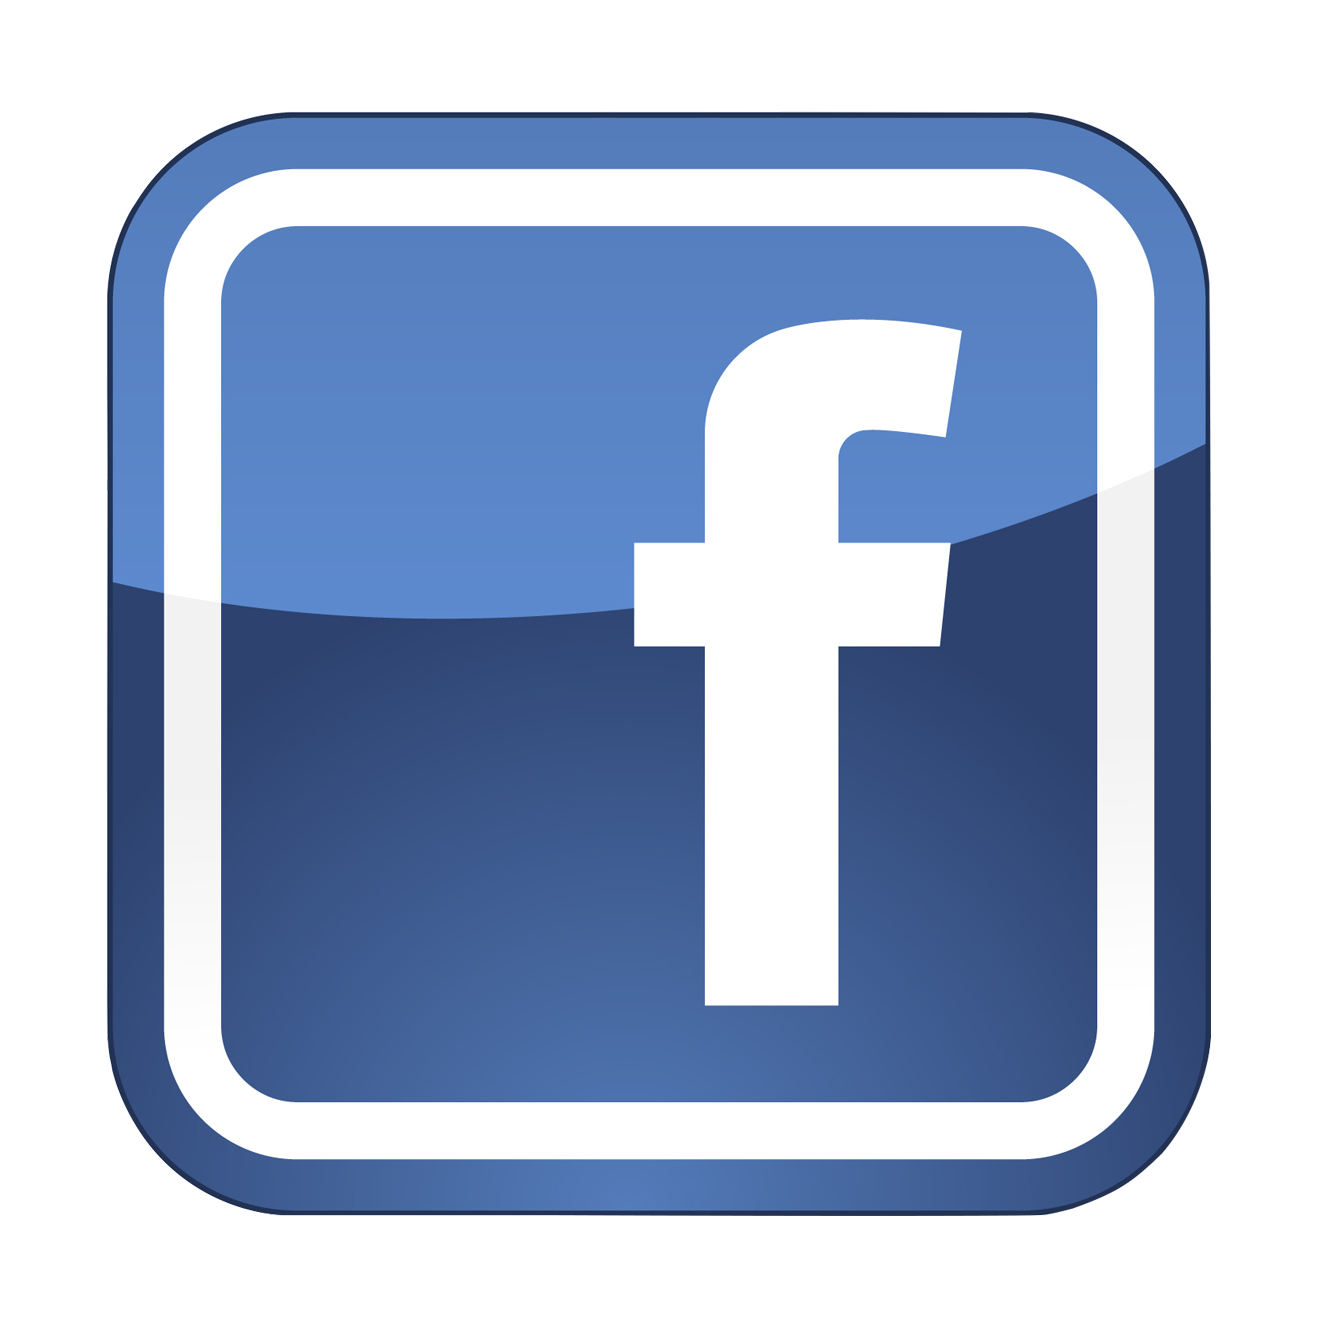 Facebook Computer Icons Social Media Clip Art Fb Png Download 1327 1340 Free Transparent Facebook Png Download Clip Art Library